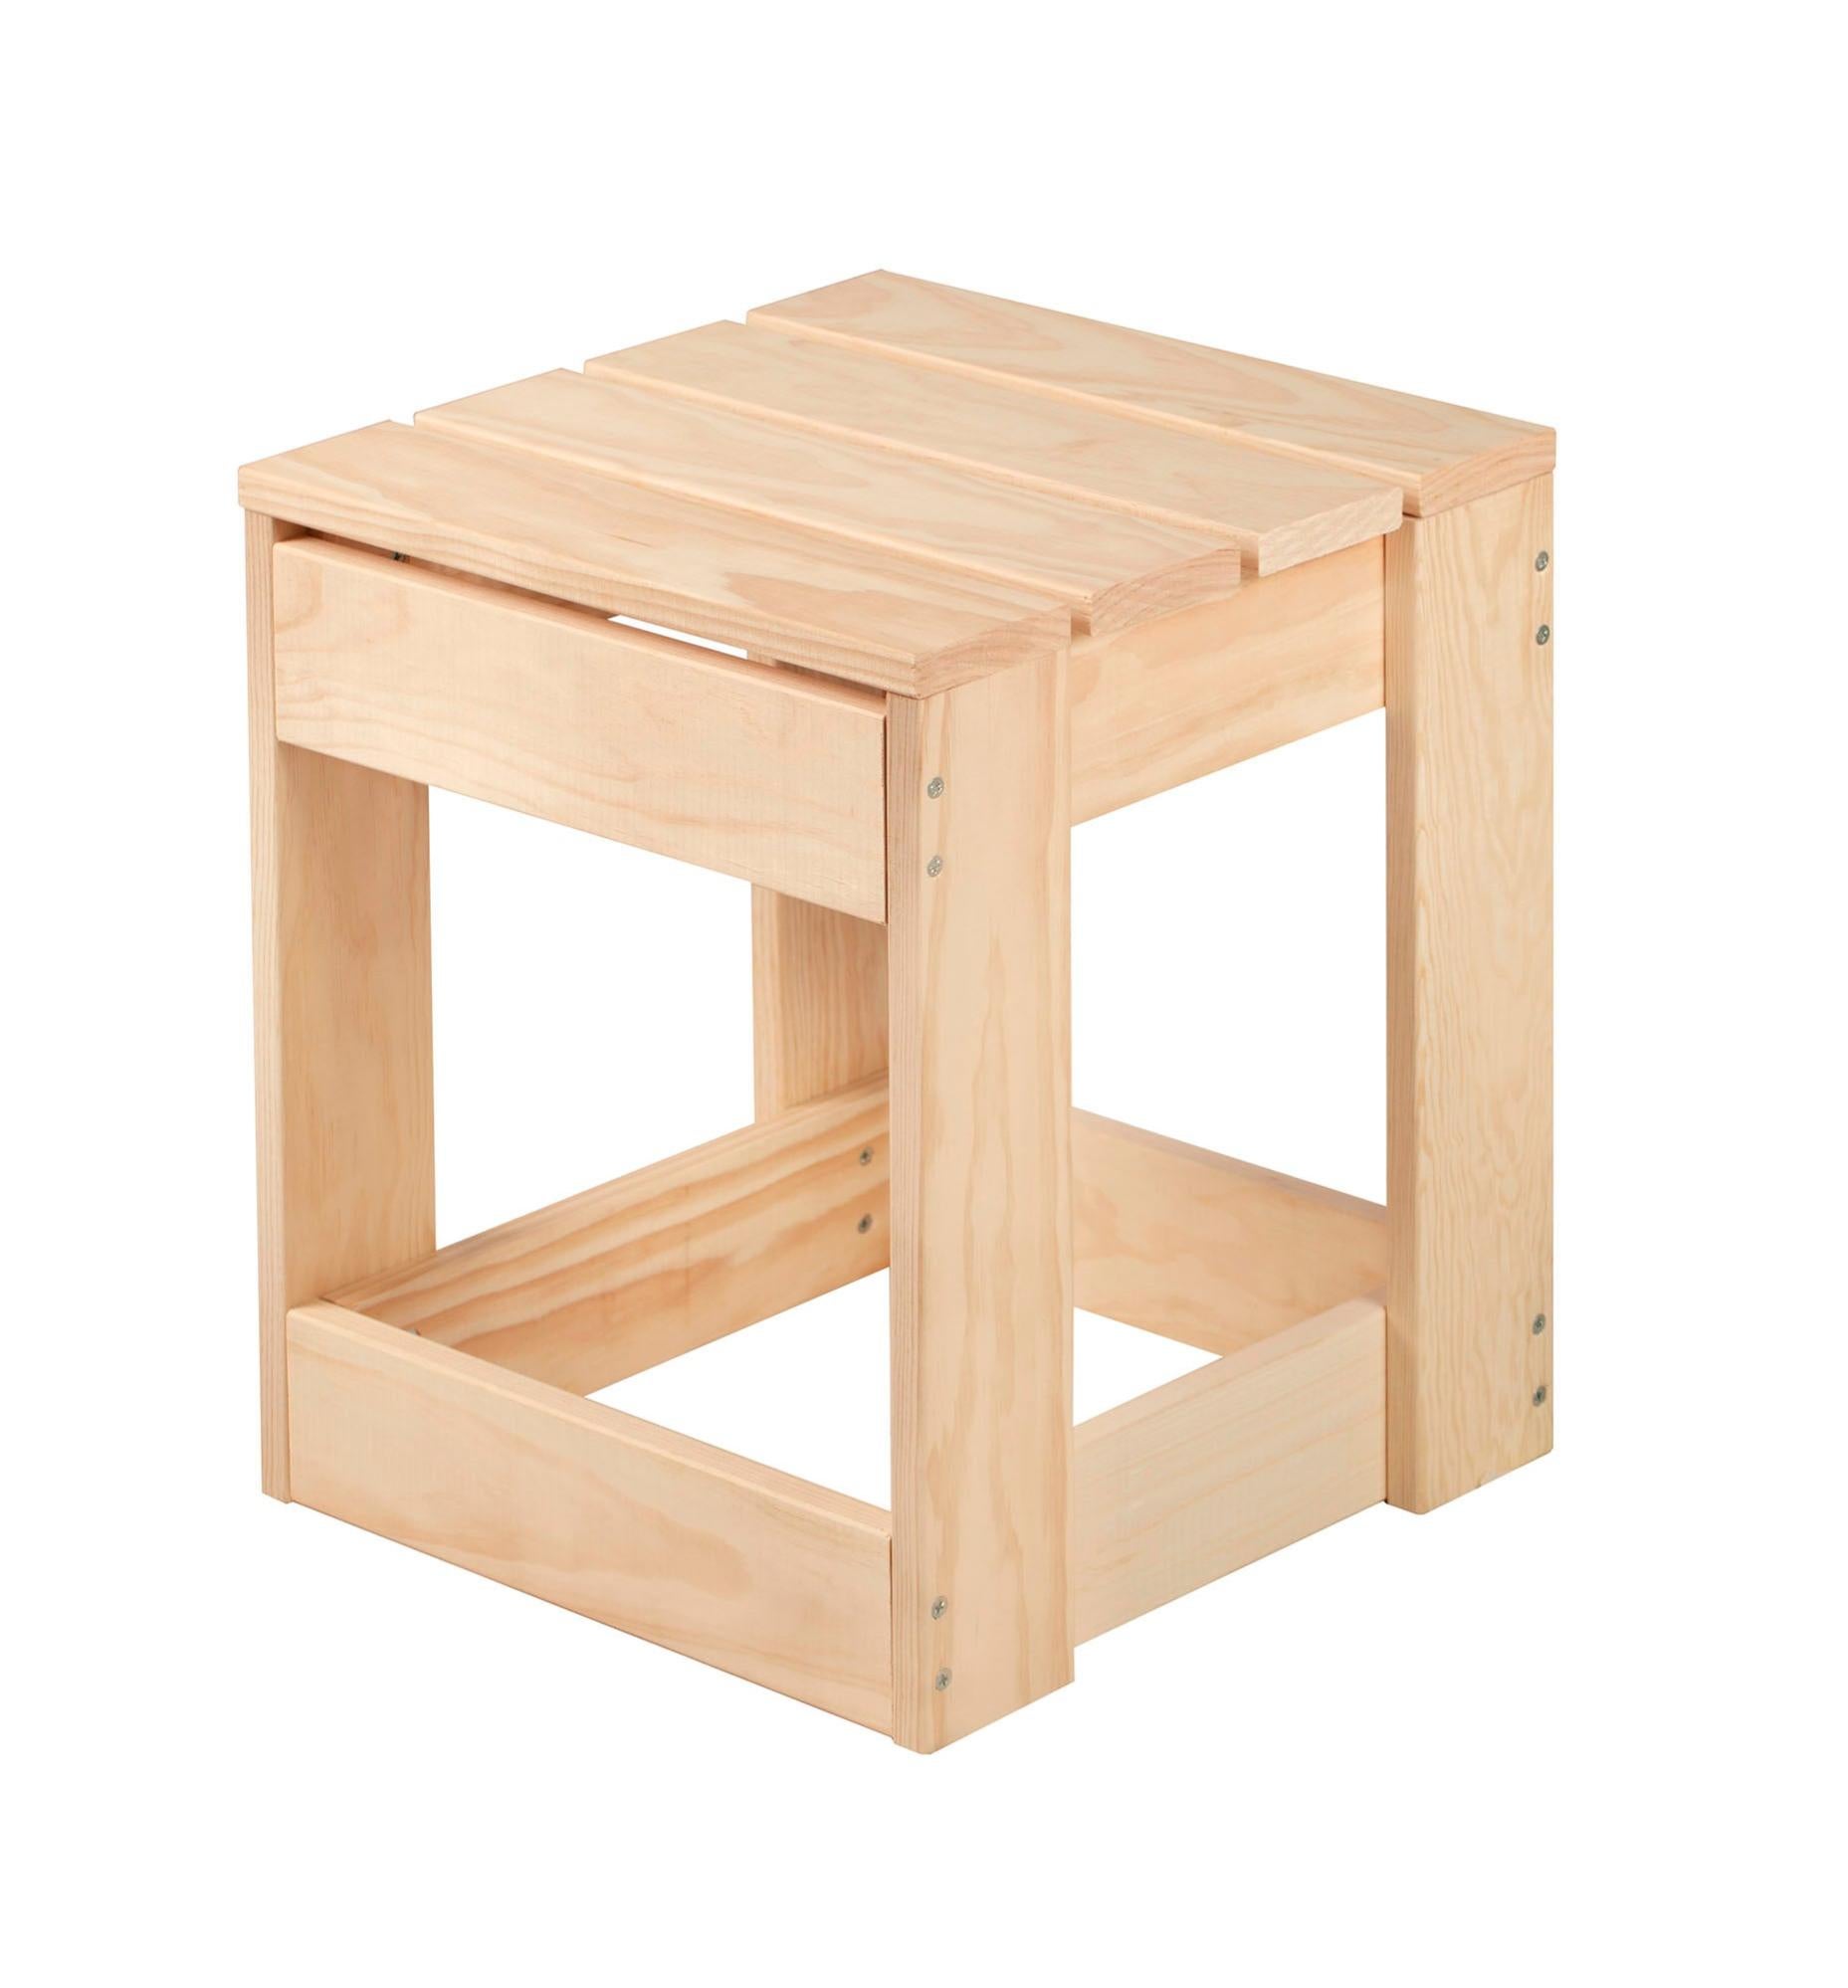 Construye un taburete con estructura de madera y asiento tapizado - Foto 1